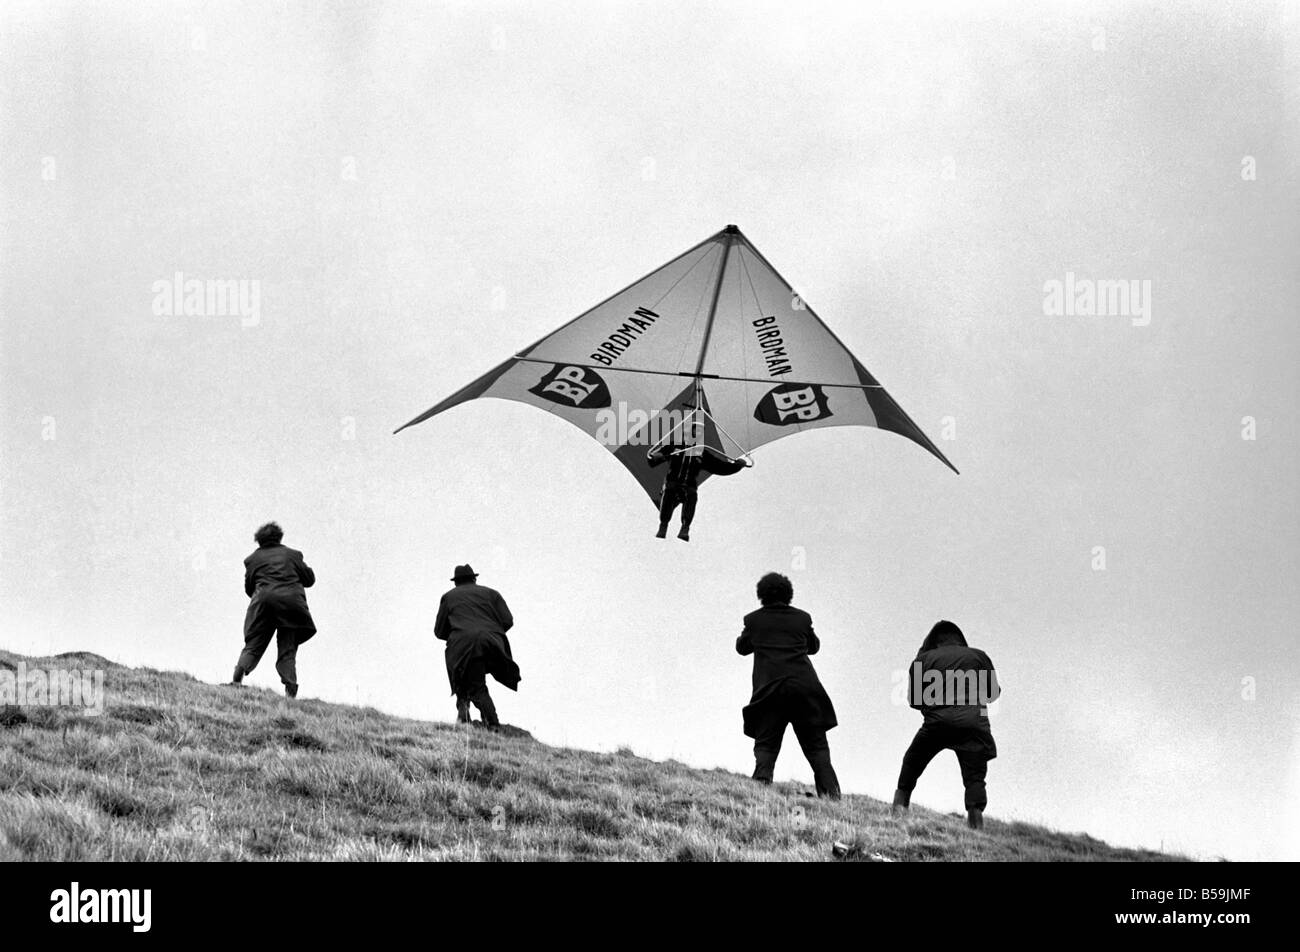 Britische Kite Team. Hang Gliding WM nächste Woche in Australien stattfindet hatten britische Team gesponsert von B.P. Last-Minute-Get-together am Nachmittag (Freitag) in Marlborough Downs, Wiltshire. März 1975 75-01306-005 Stockfoto